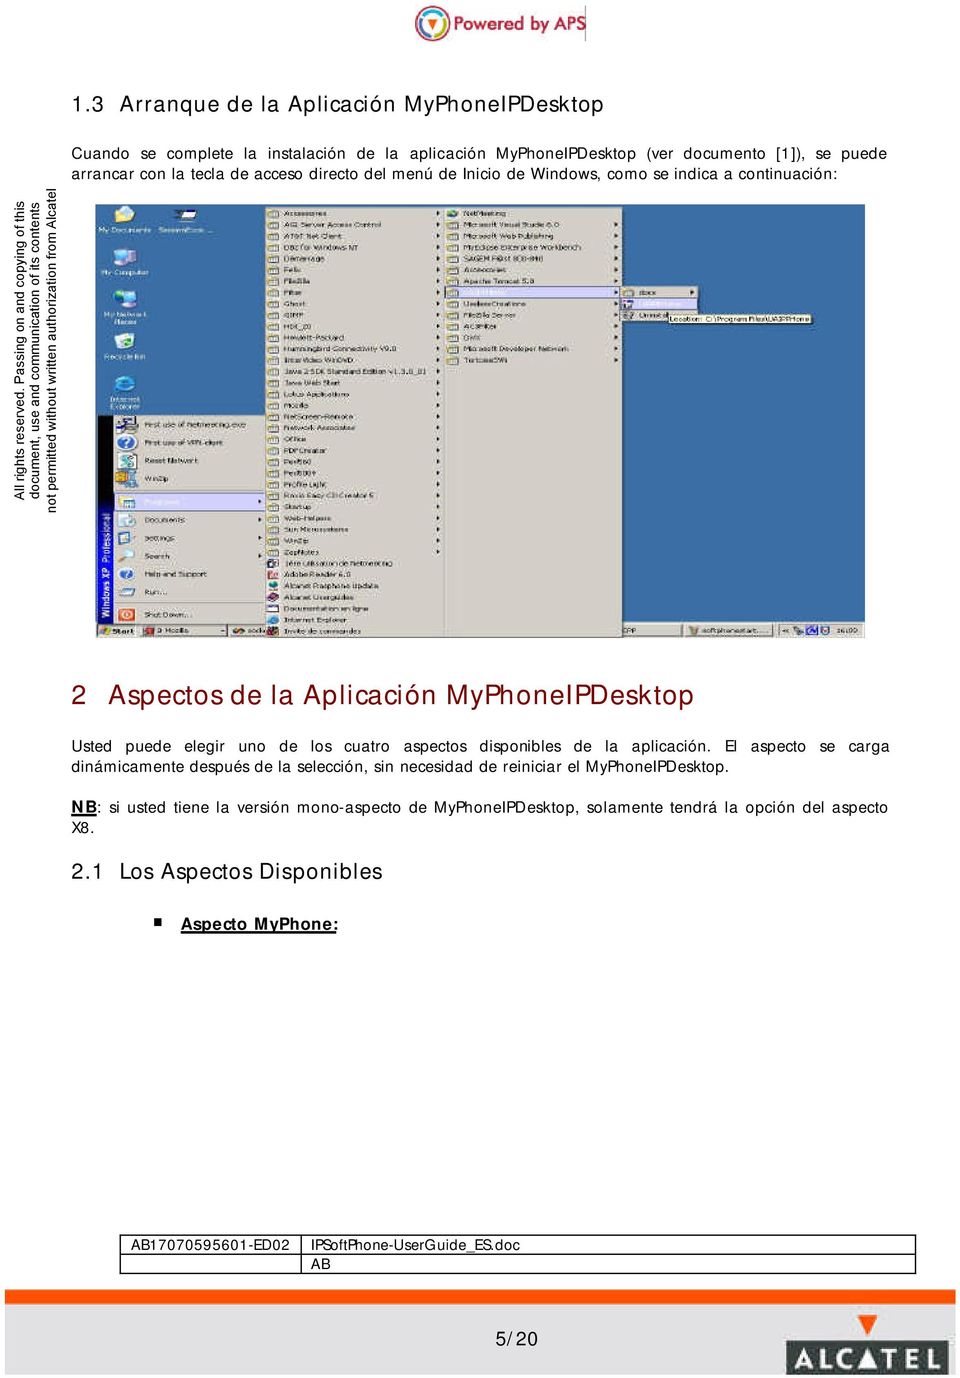 Passing on and copying of this 2 Aspectos de la Aplicación MyPhoneIPDesktop Usted puede elegir uno de los cuatro aspectos disponibles de la aplicación.